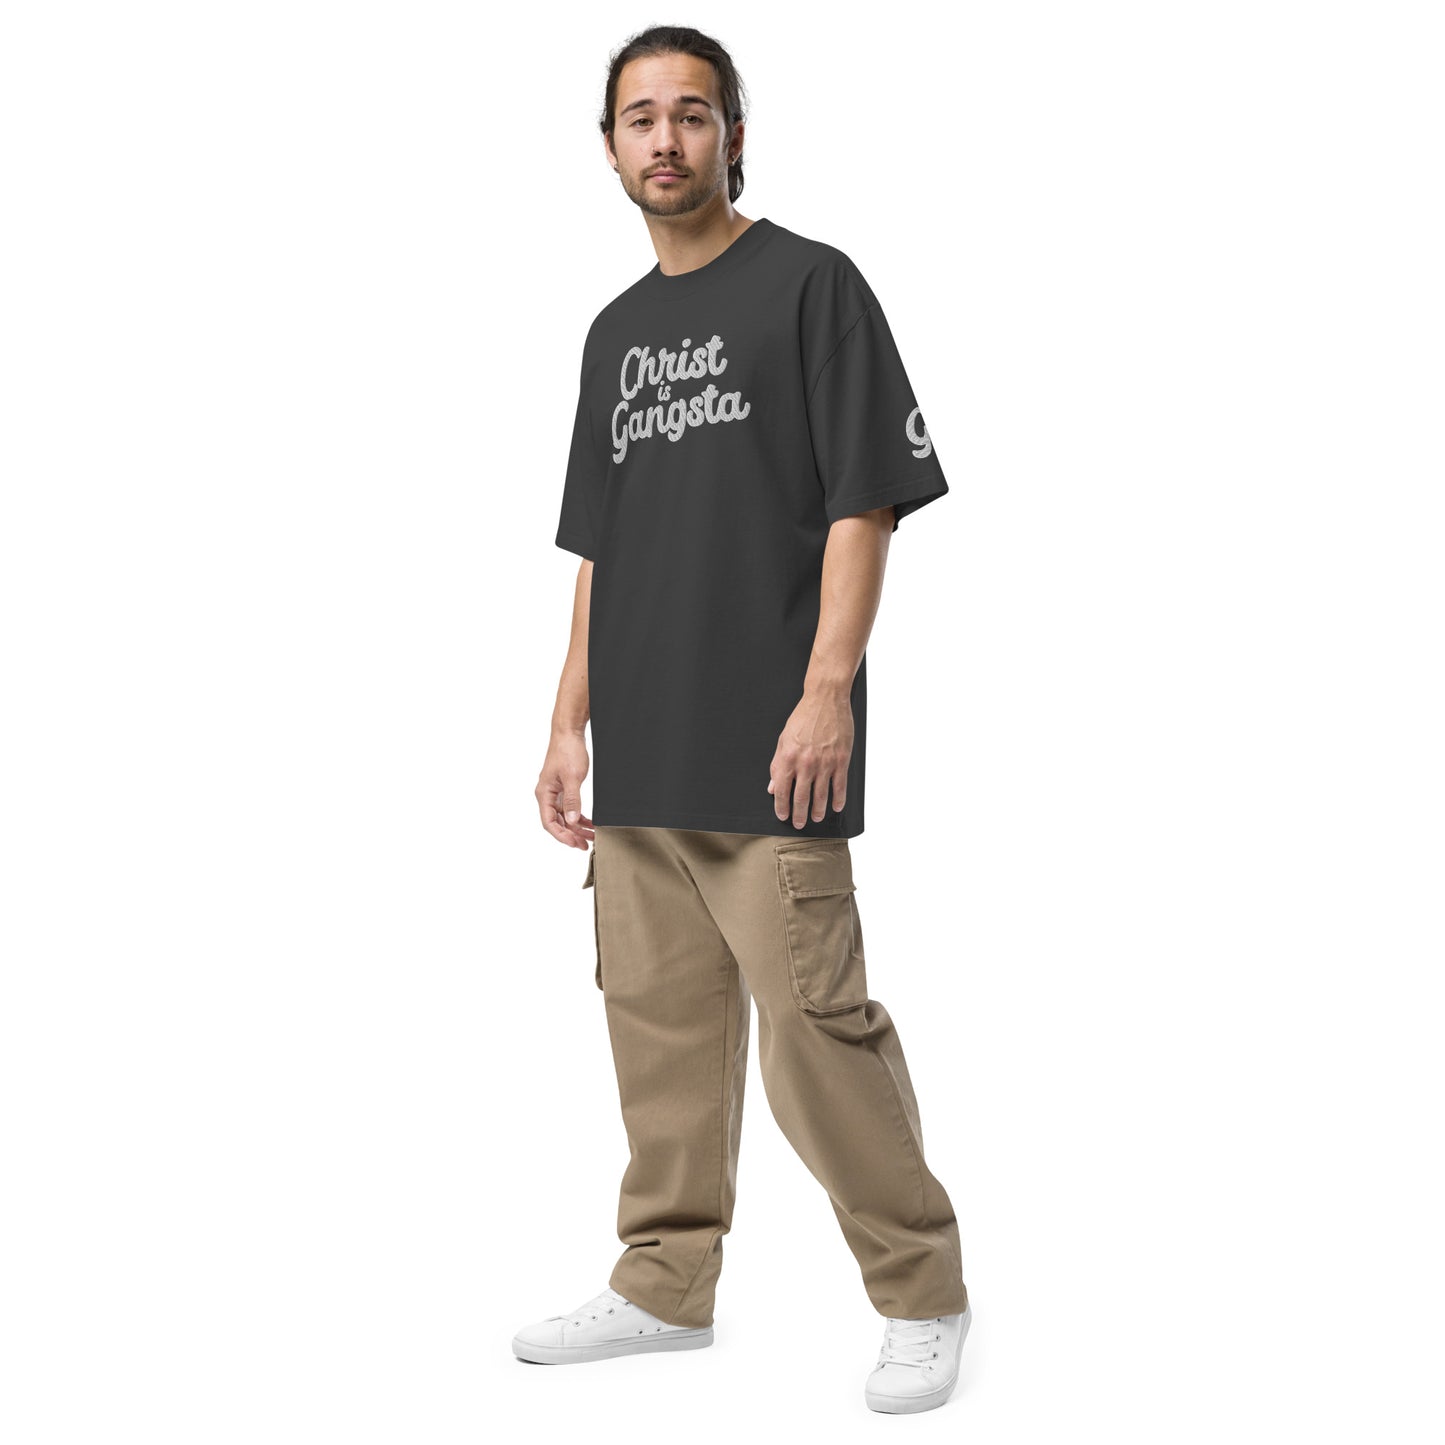 Christ is Gangsta Oversized t-shirt